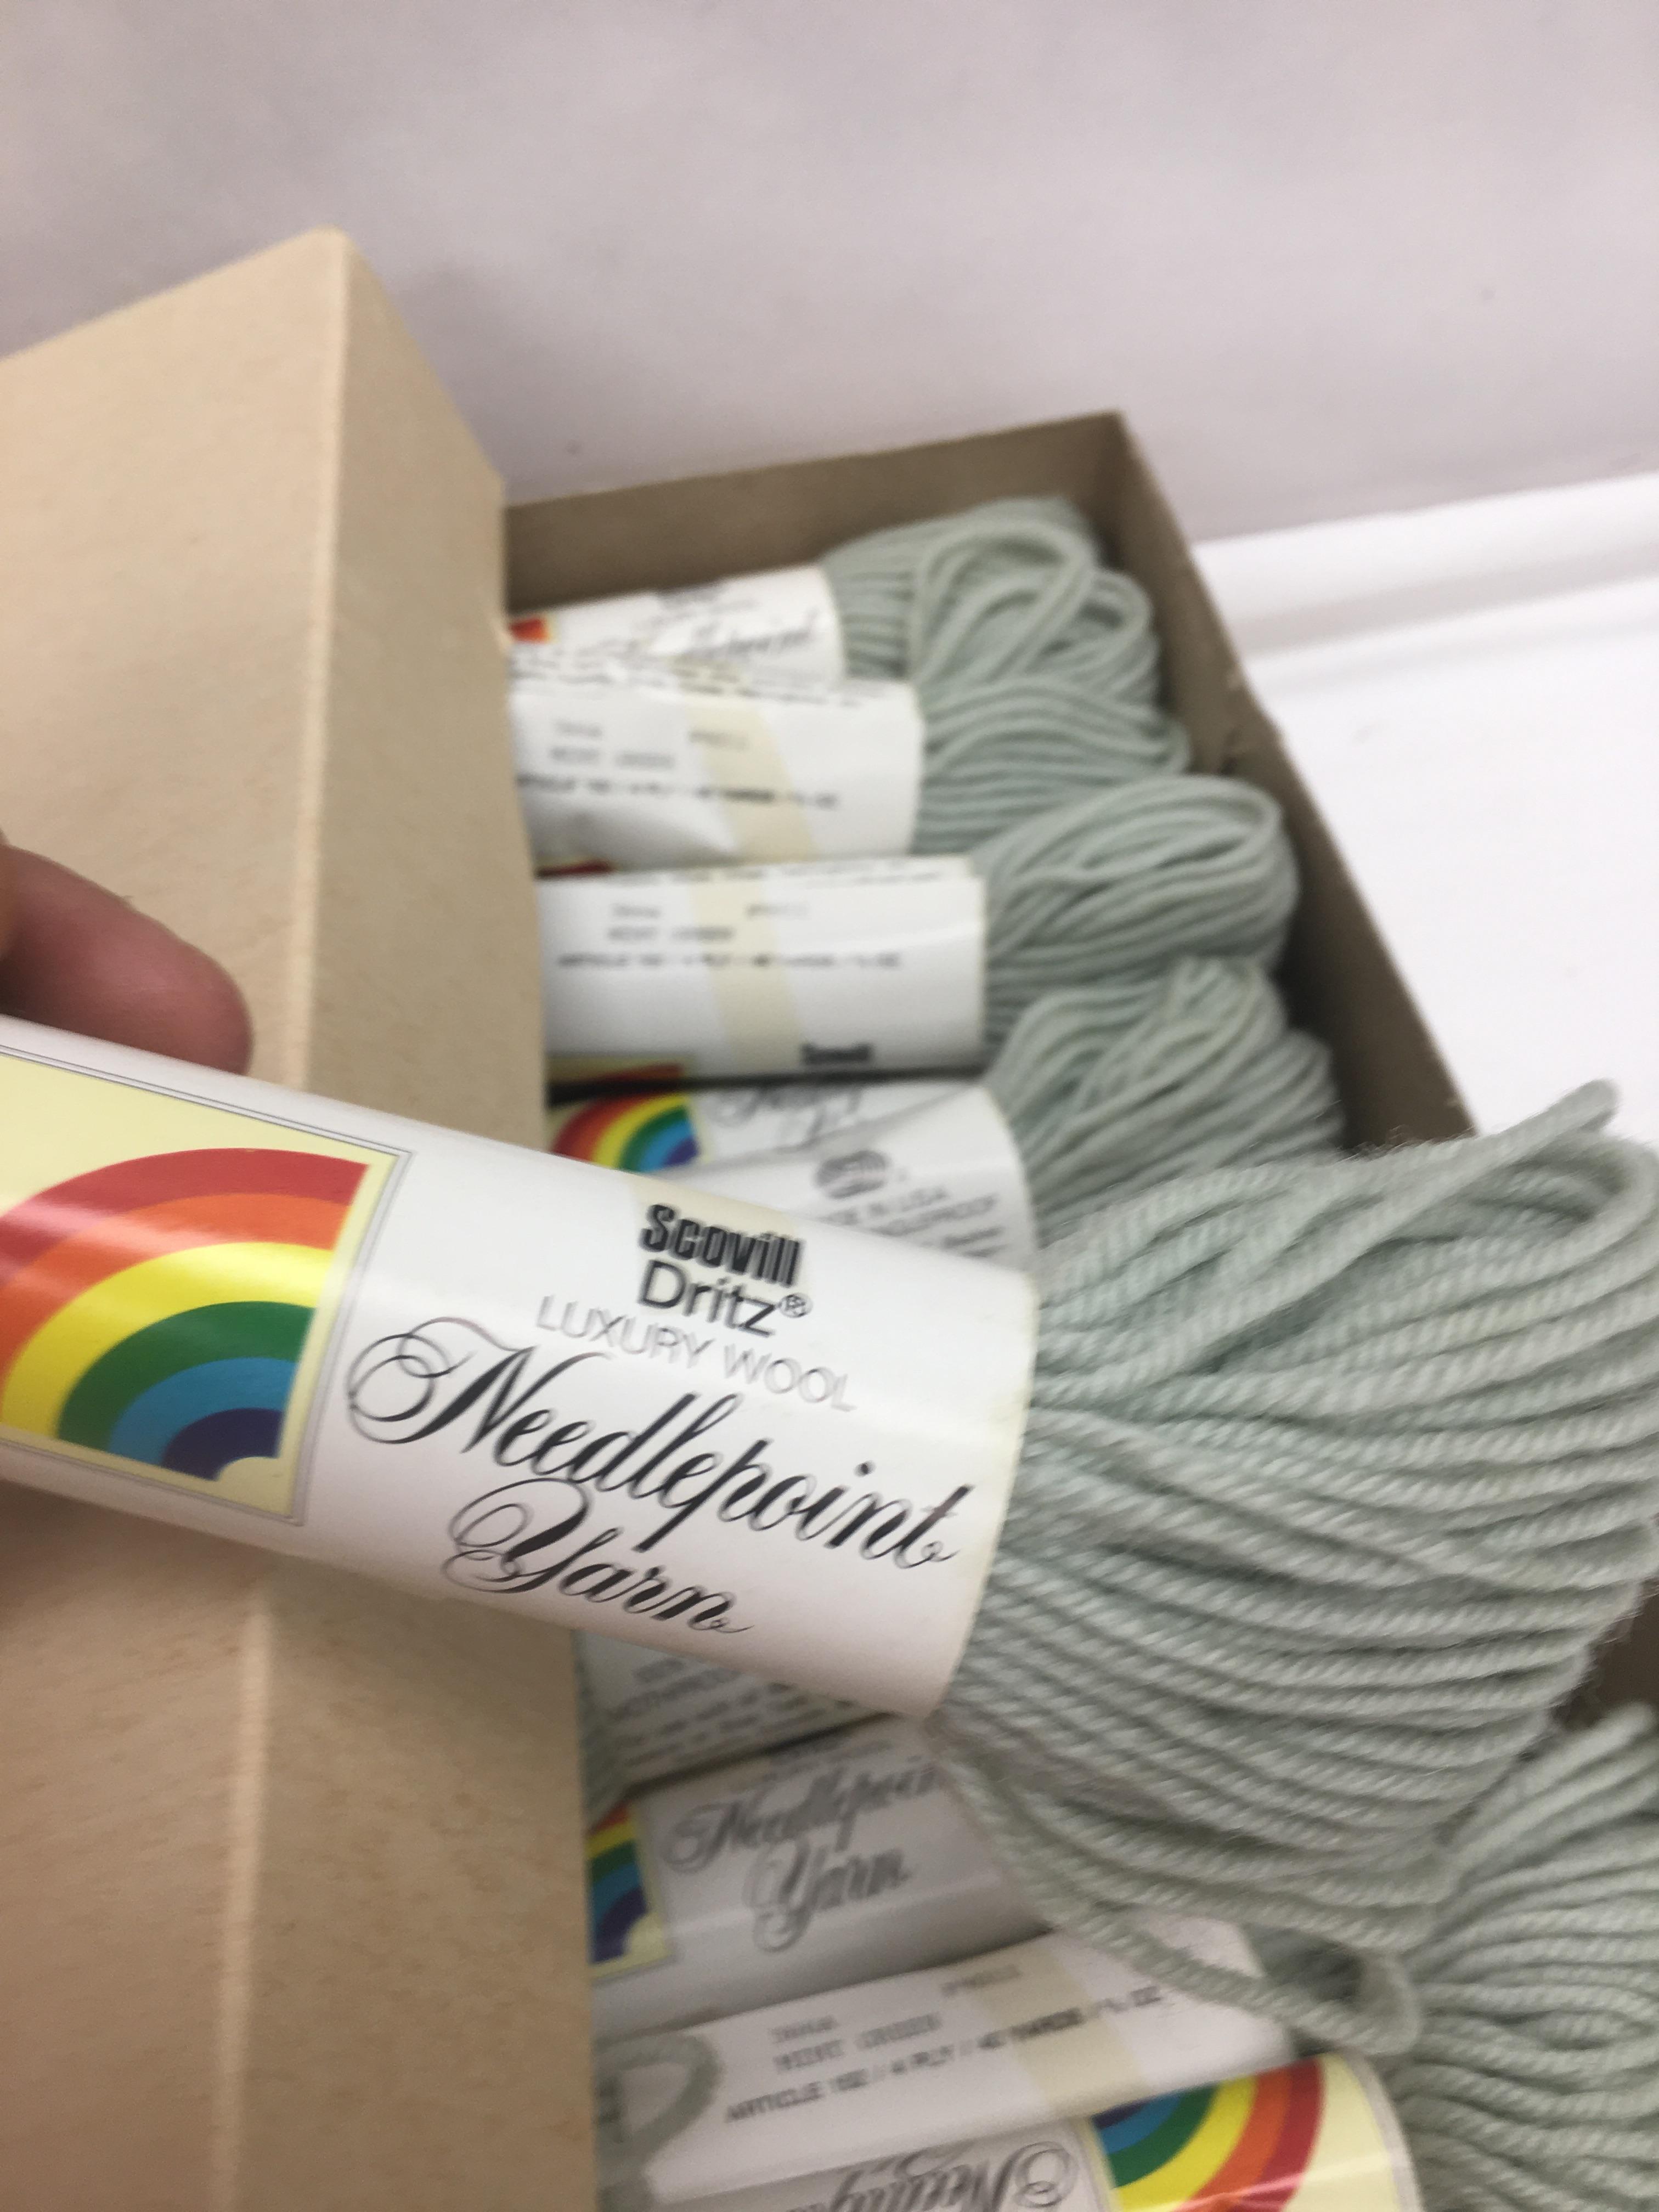 Scovill Dritz Pure Virgin Wool NeedlePoint Yarn